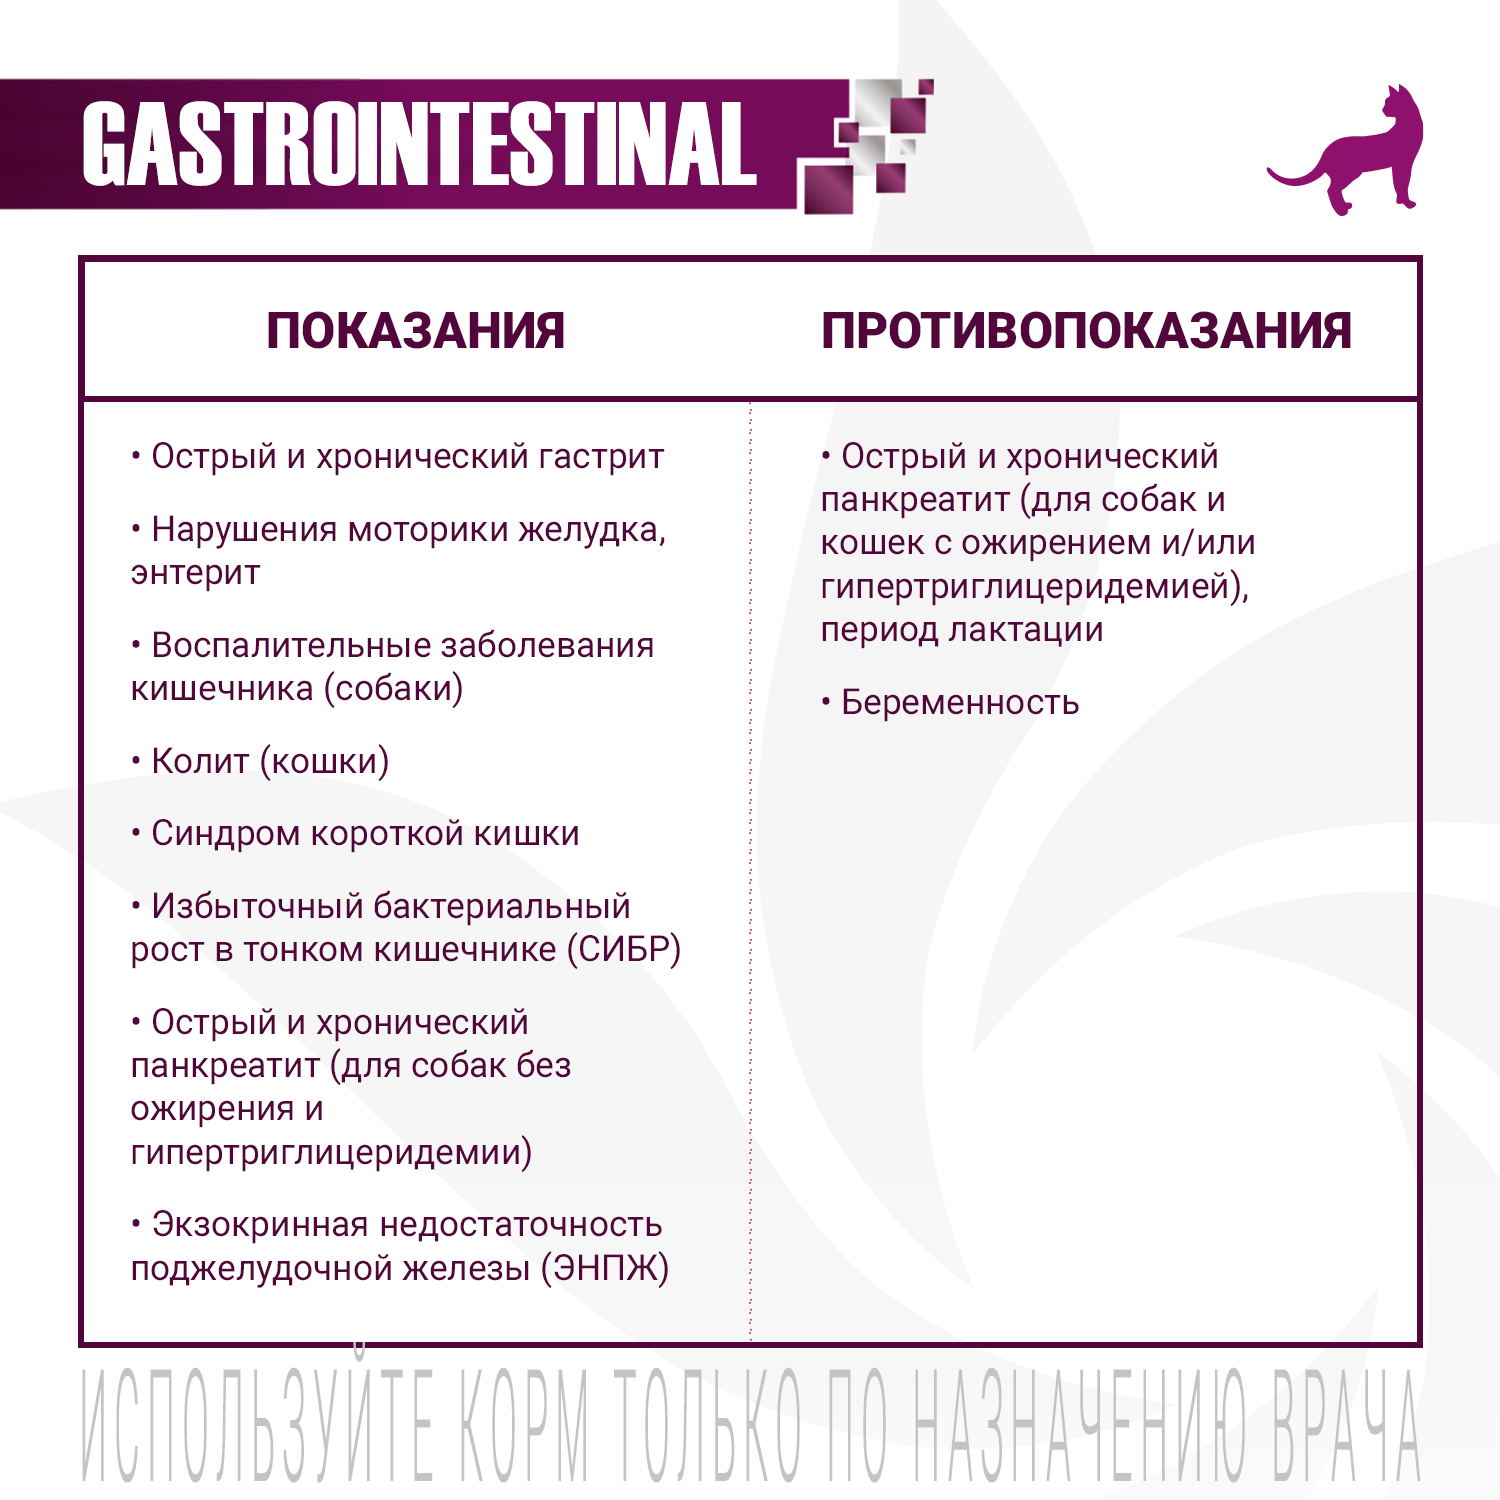 Ветеринарная диета Monge VetSolution Cat Gastrointestinal гастро интестинал для кошек при заболеваниях ЖКТ 100 г